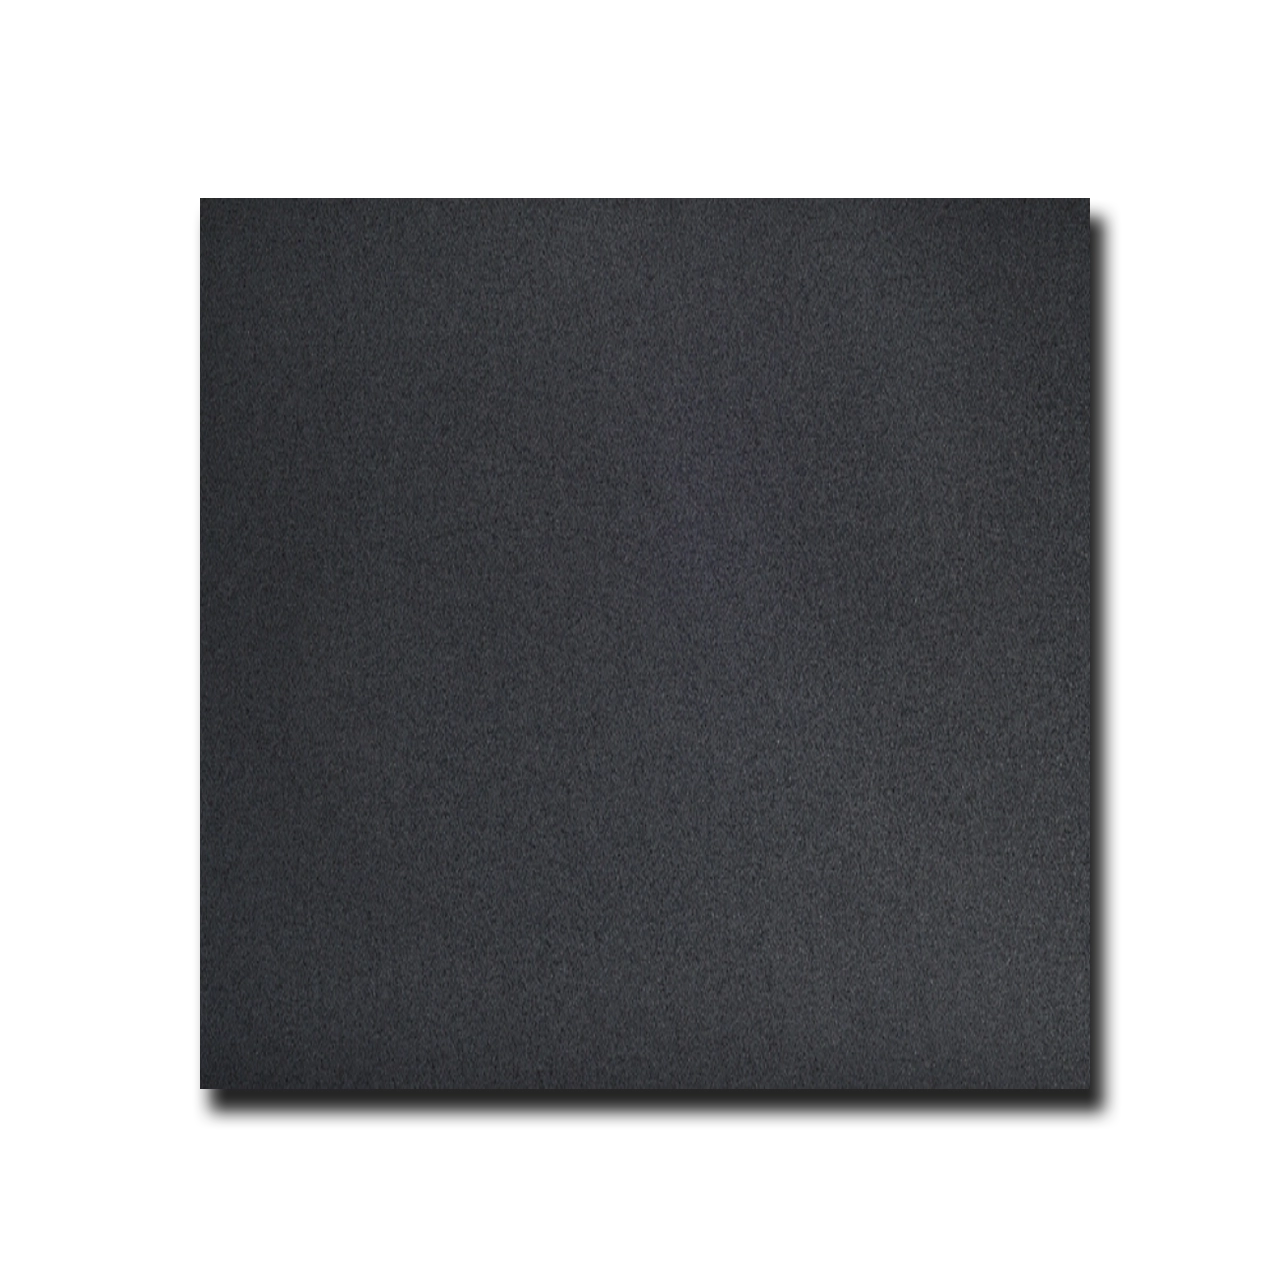 Black Basalt Basalt Tile Honed 24" x 24" 3/8" Tile